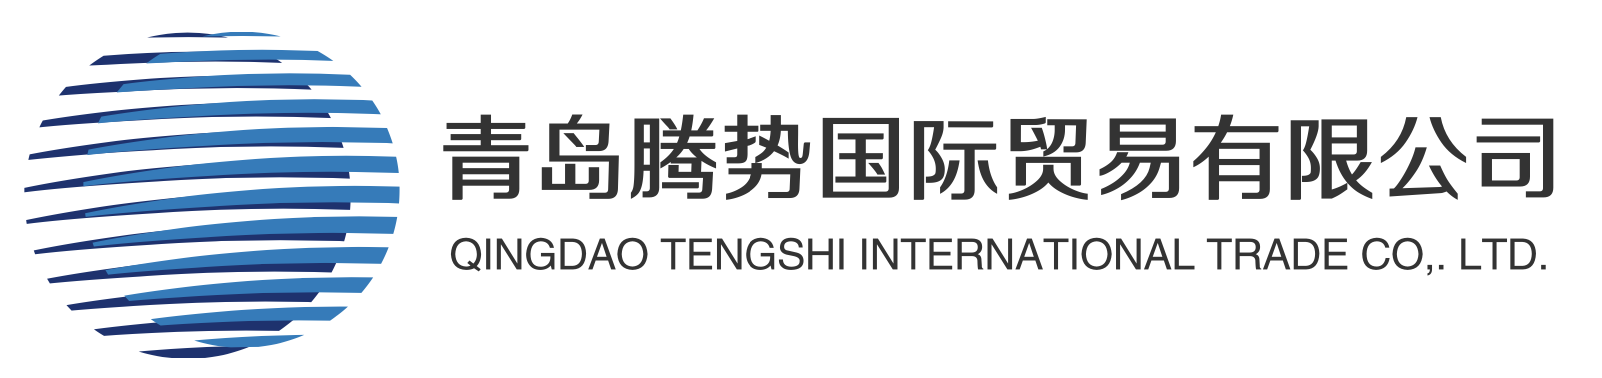 Qingdao Tengshi International Trade Co., Ltd.